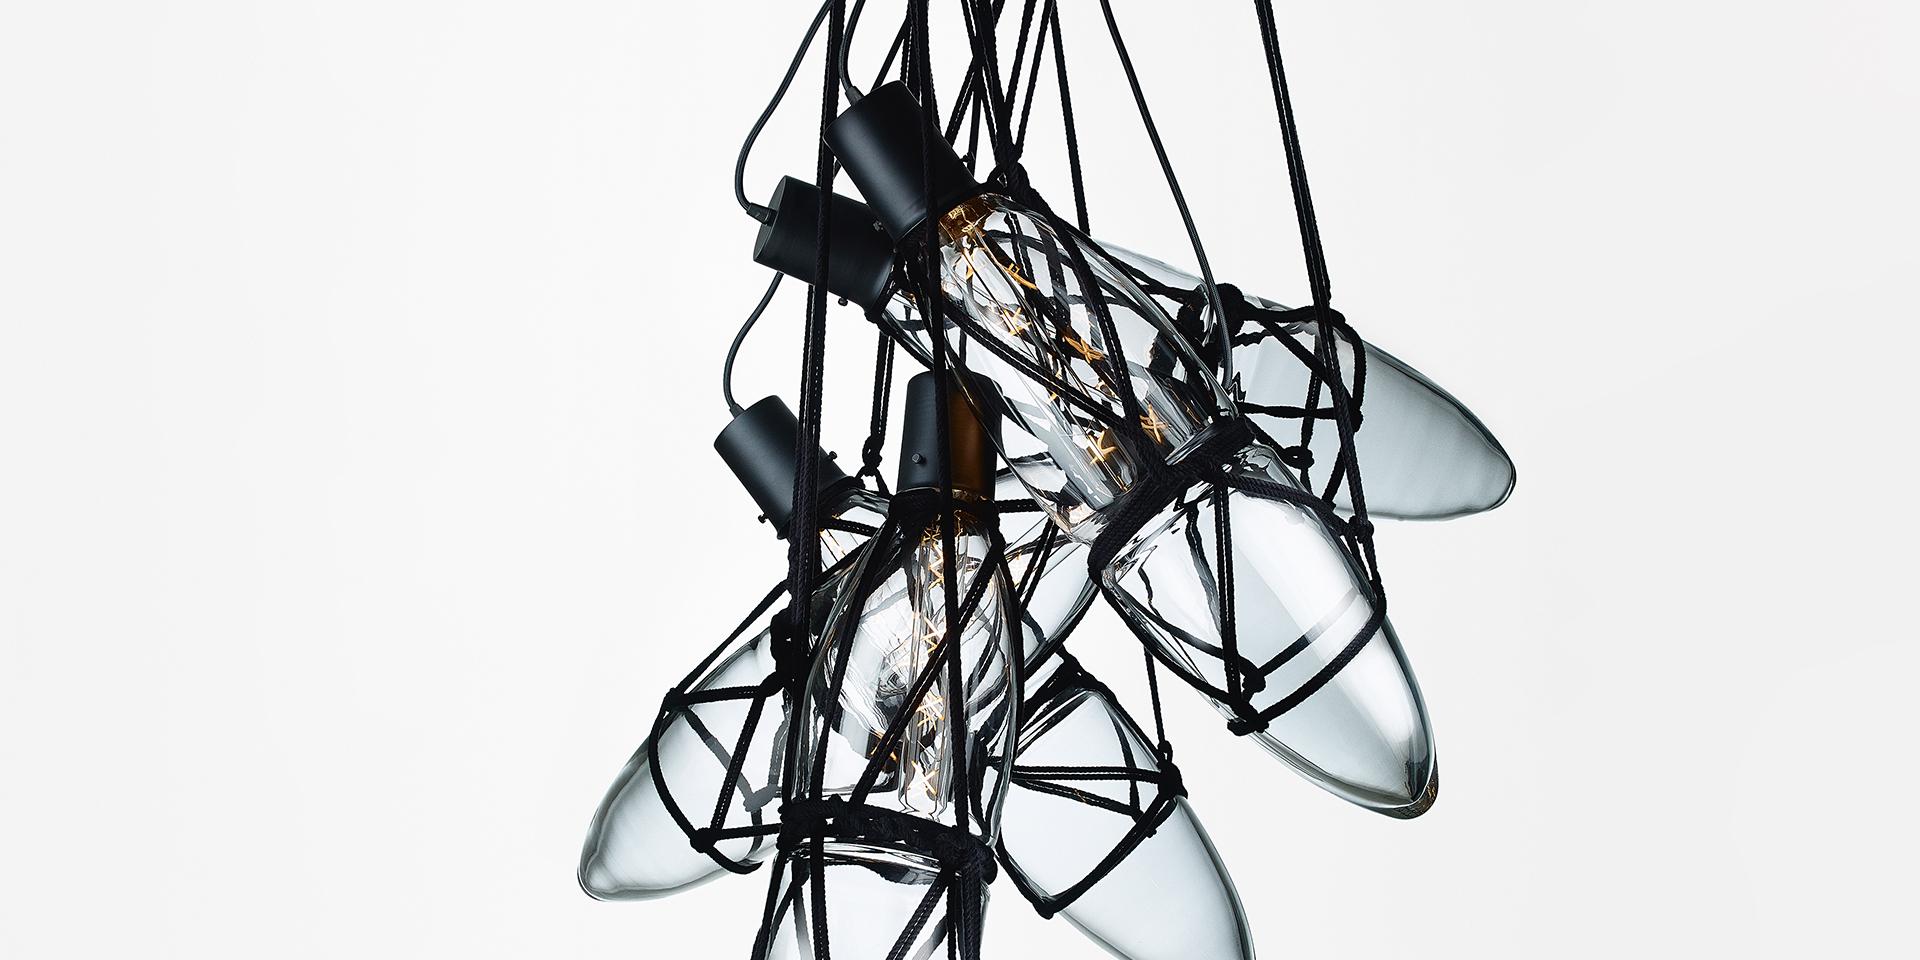 Zeitgenössische Pendelleuchte aus mundgeblasenem Kristallglas - Shibari von Katerina Handlová für Bomma

Shibari ist nicht einfach nur eine Technik des Fesselns von Gegenständen mit Seilen, sondern eine Methode der Kommunikation innerhalb